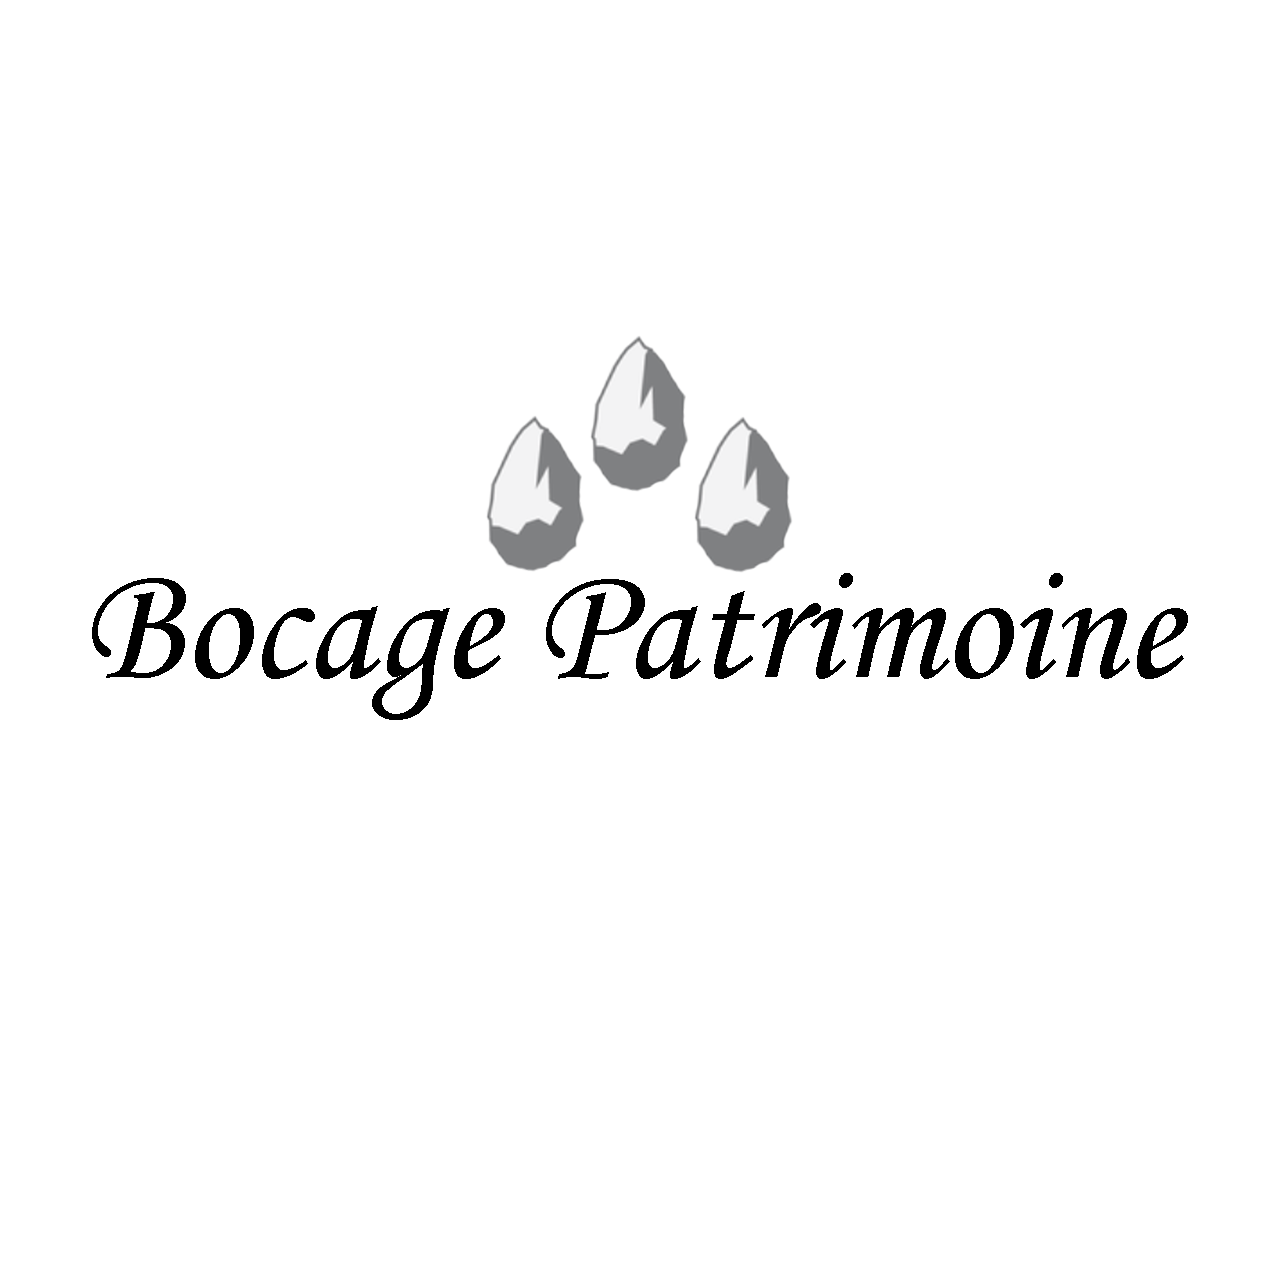 BOCAGE PATRIMOINE, inscrit à l'annuaire deeptinvest